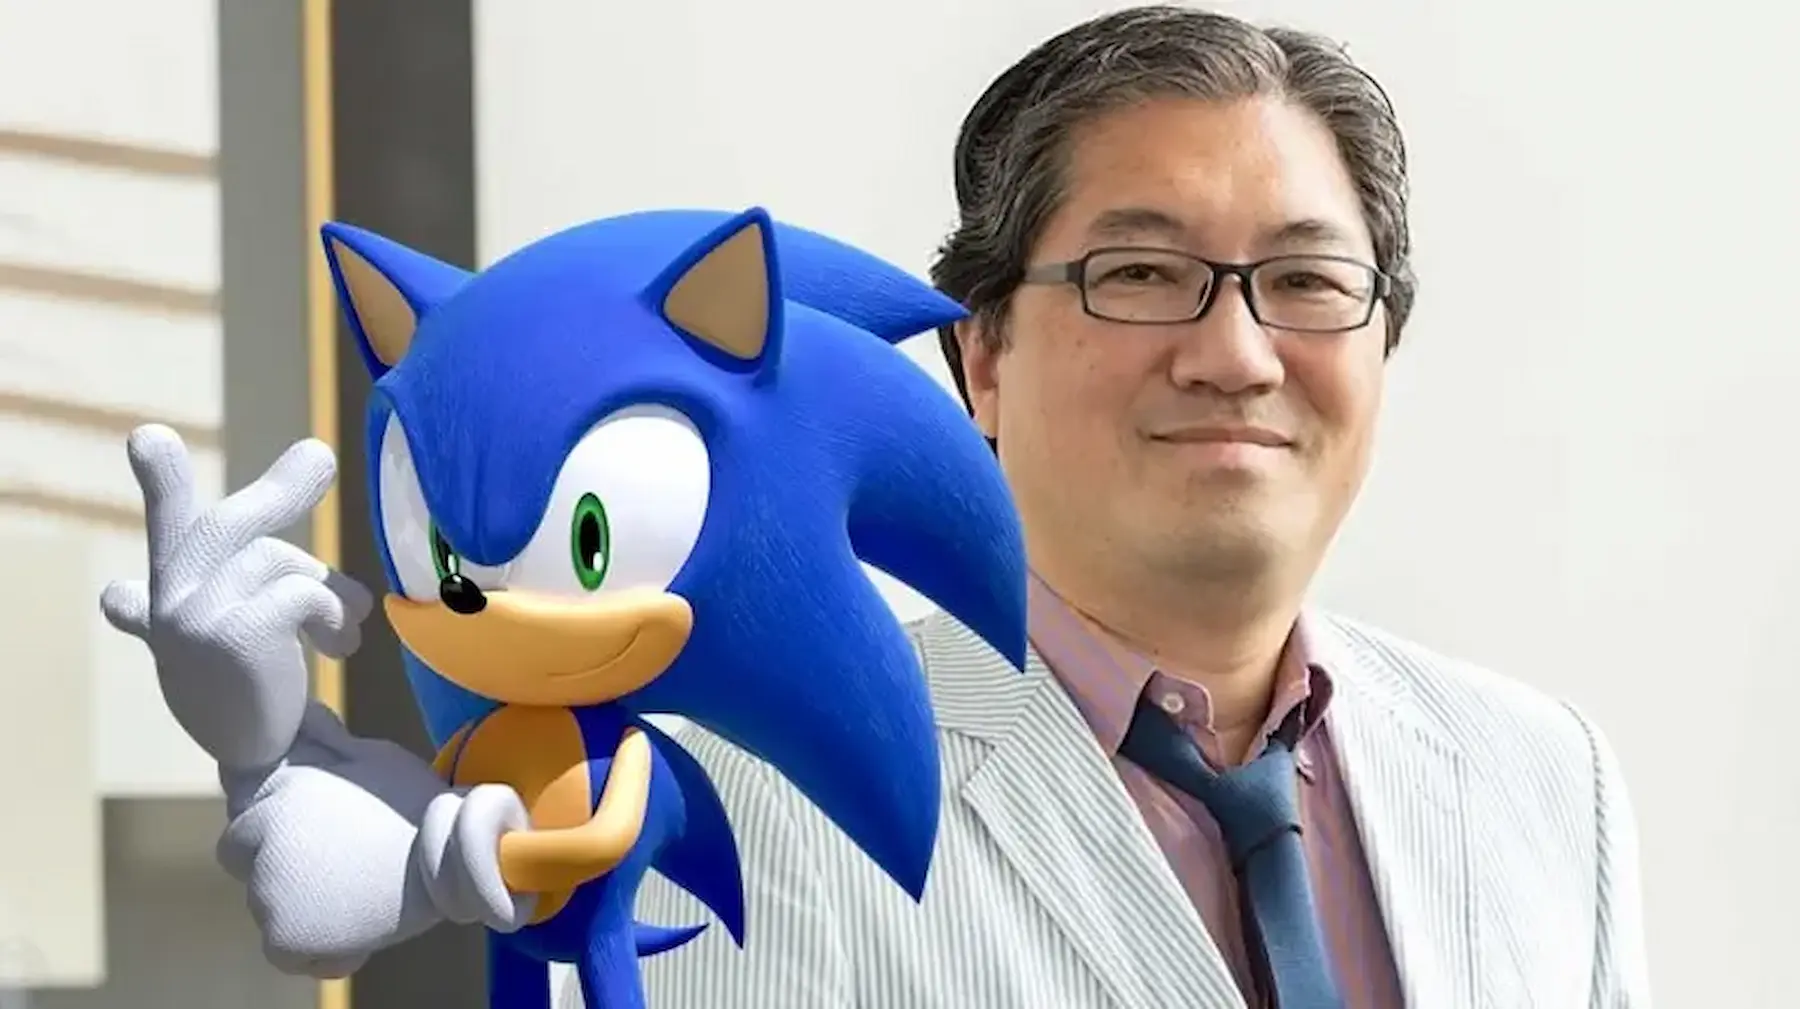 Increíble pero cierto: el creador de Sonic ha sido arrestado - GuiltyBit